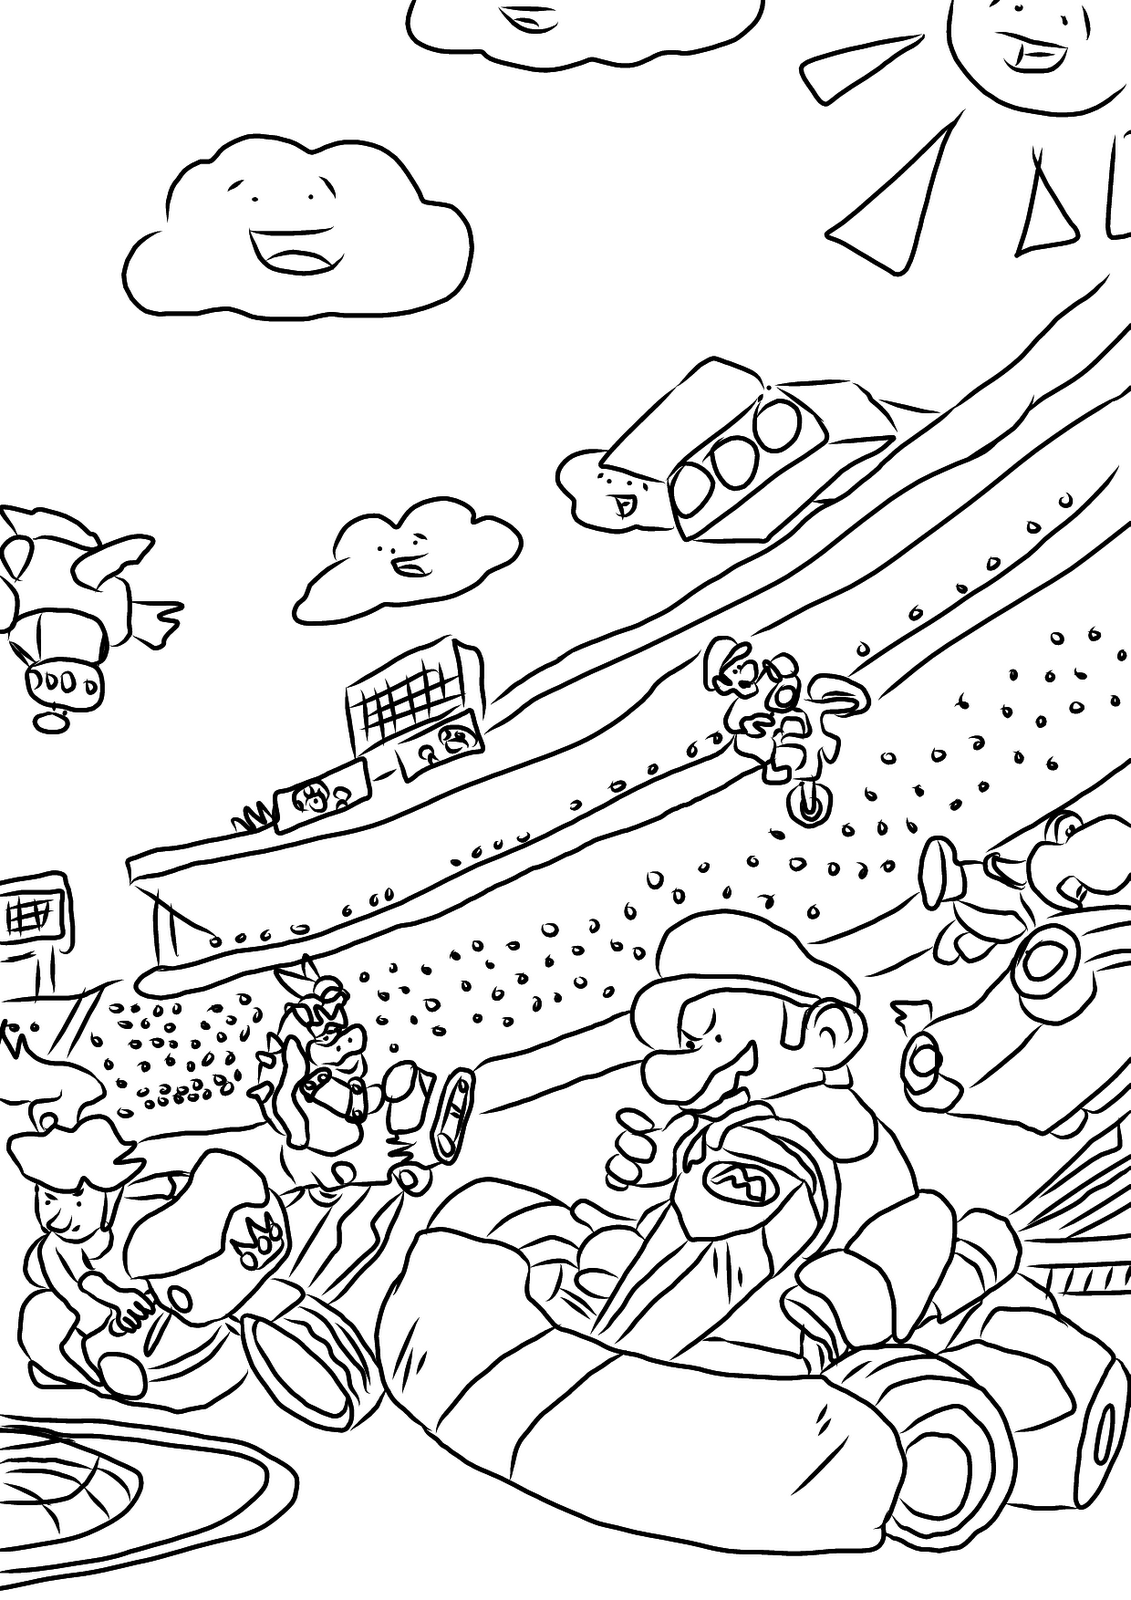 Coloriage Mario Kart 13 Jeux Videos Coloriages A Imprimer